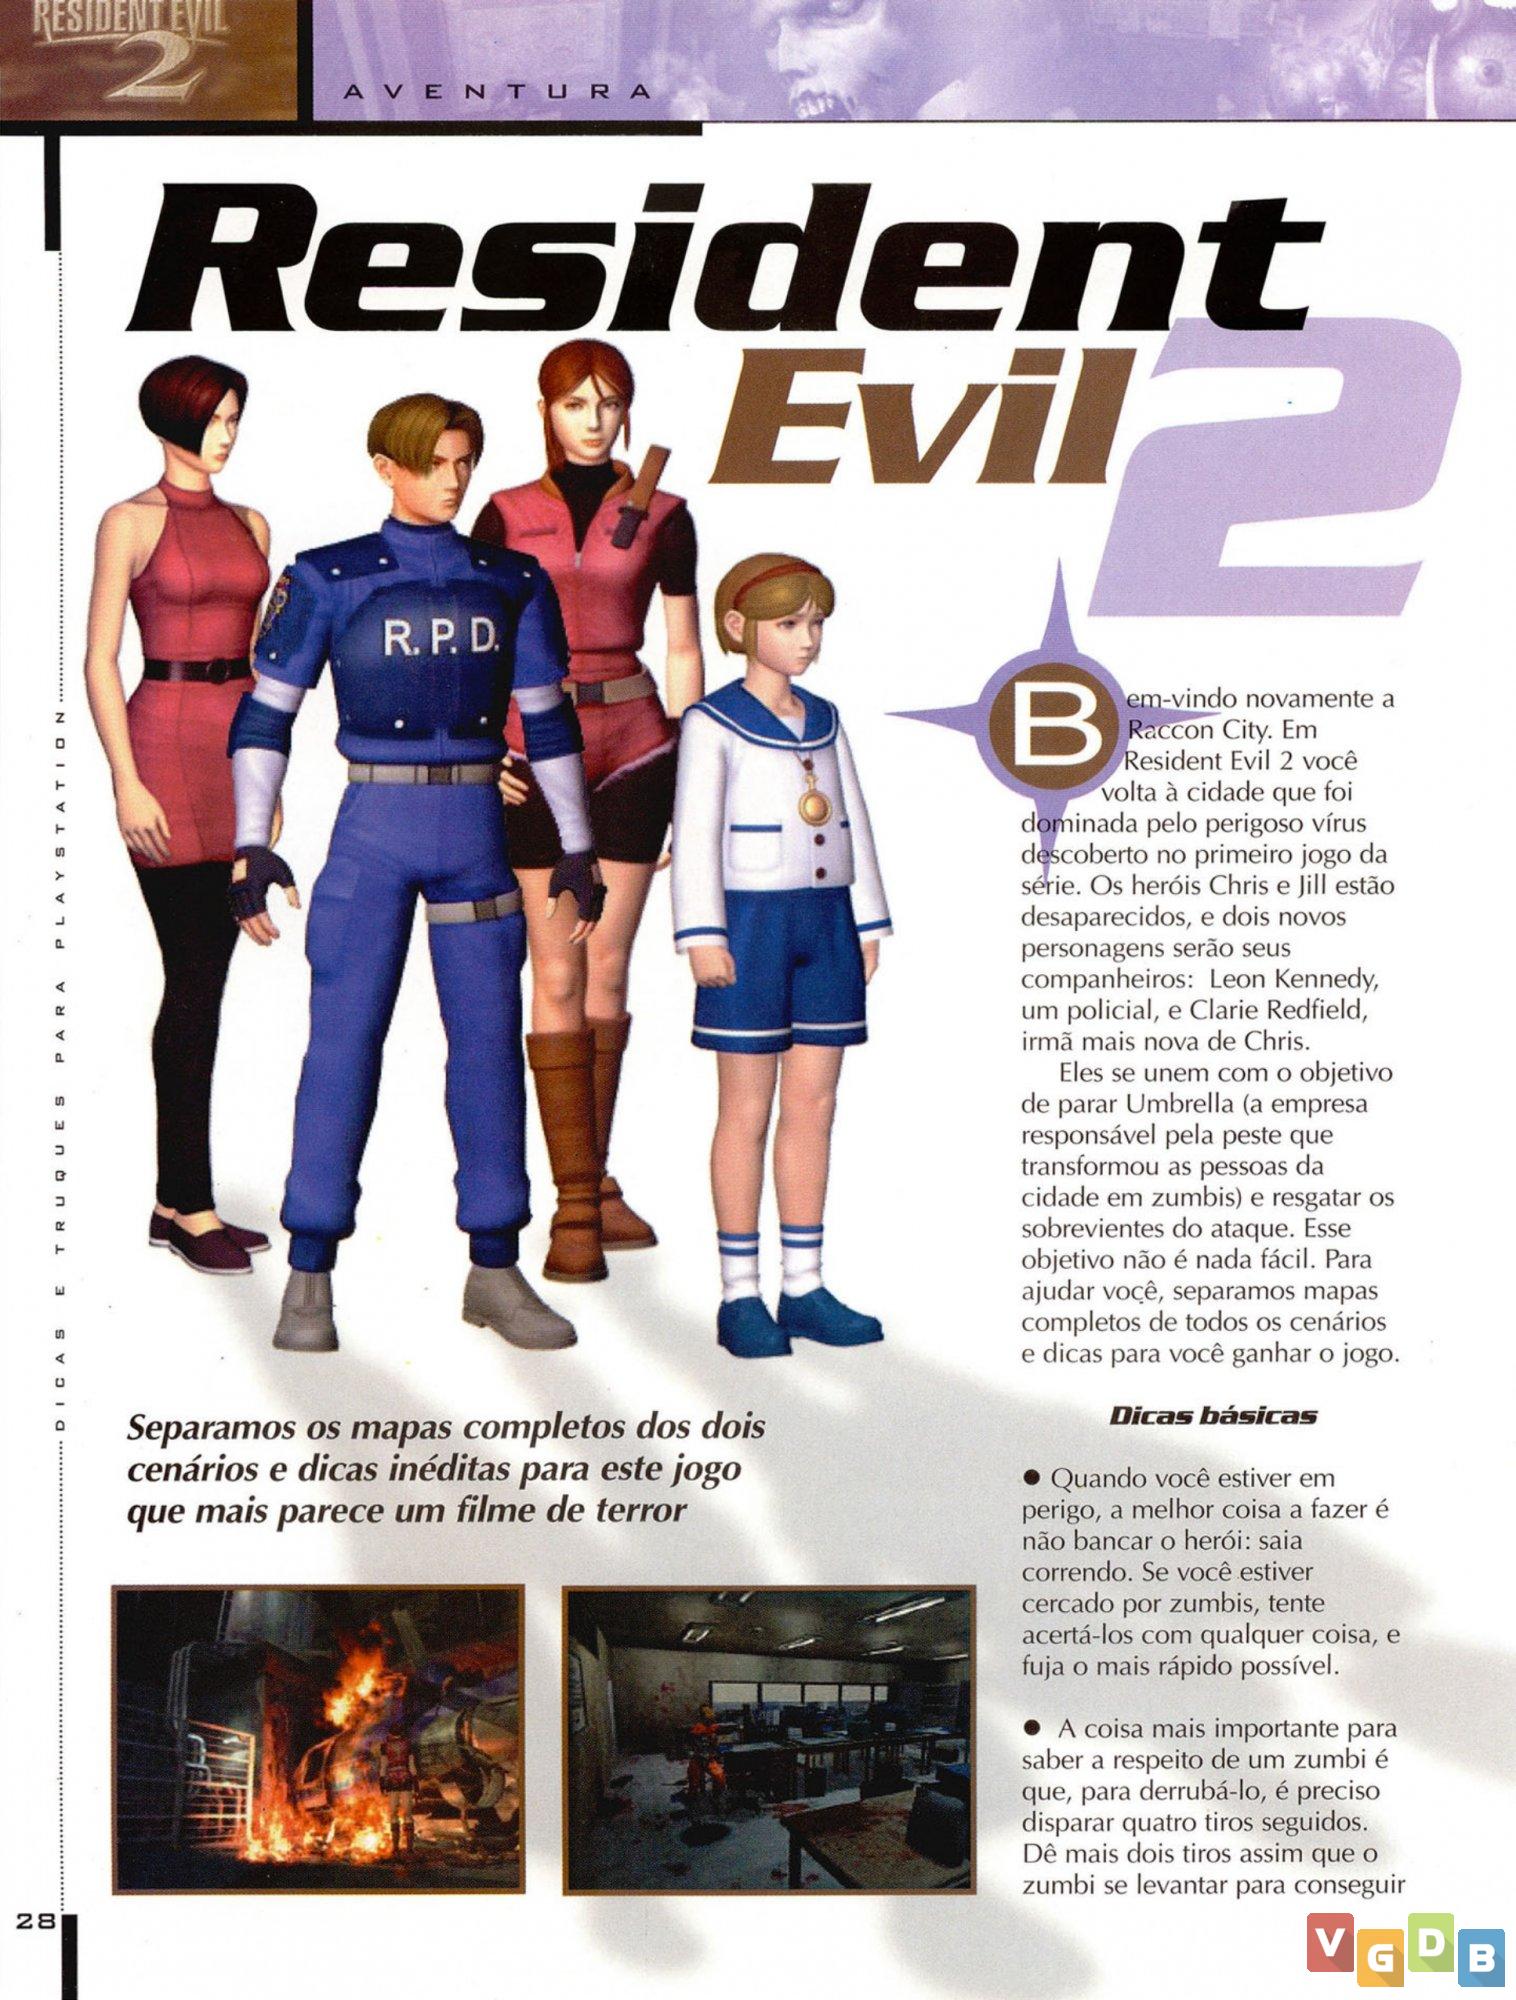 Jogos da saga resident Evil para ps4 Resident evil 2 Resident evil 5 etc -  Hobbies e coleções - Samambaia Sul (Samambaia), Brasília 1257108413